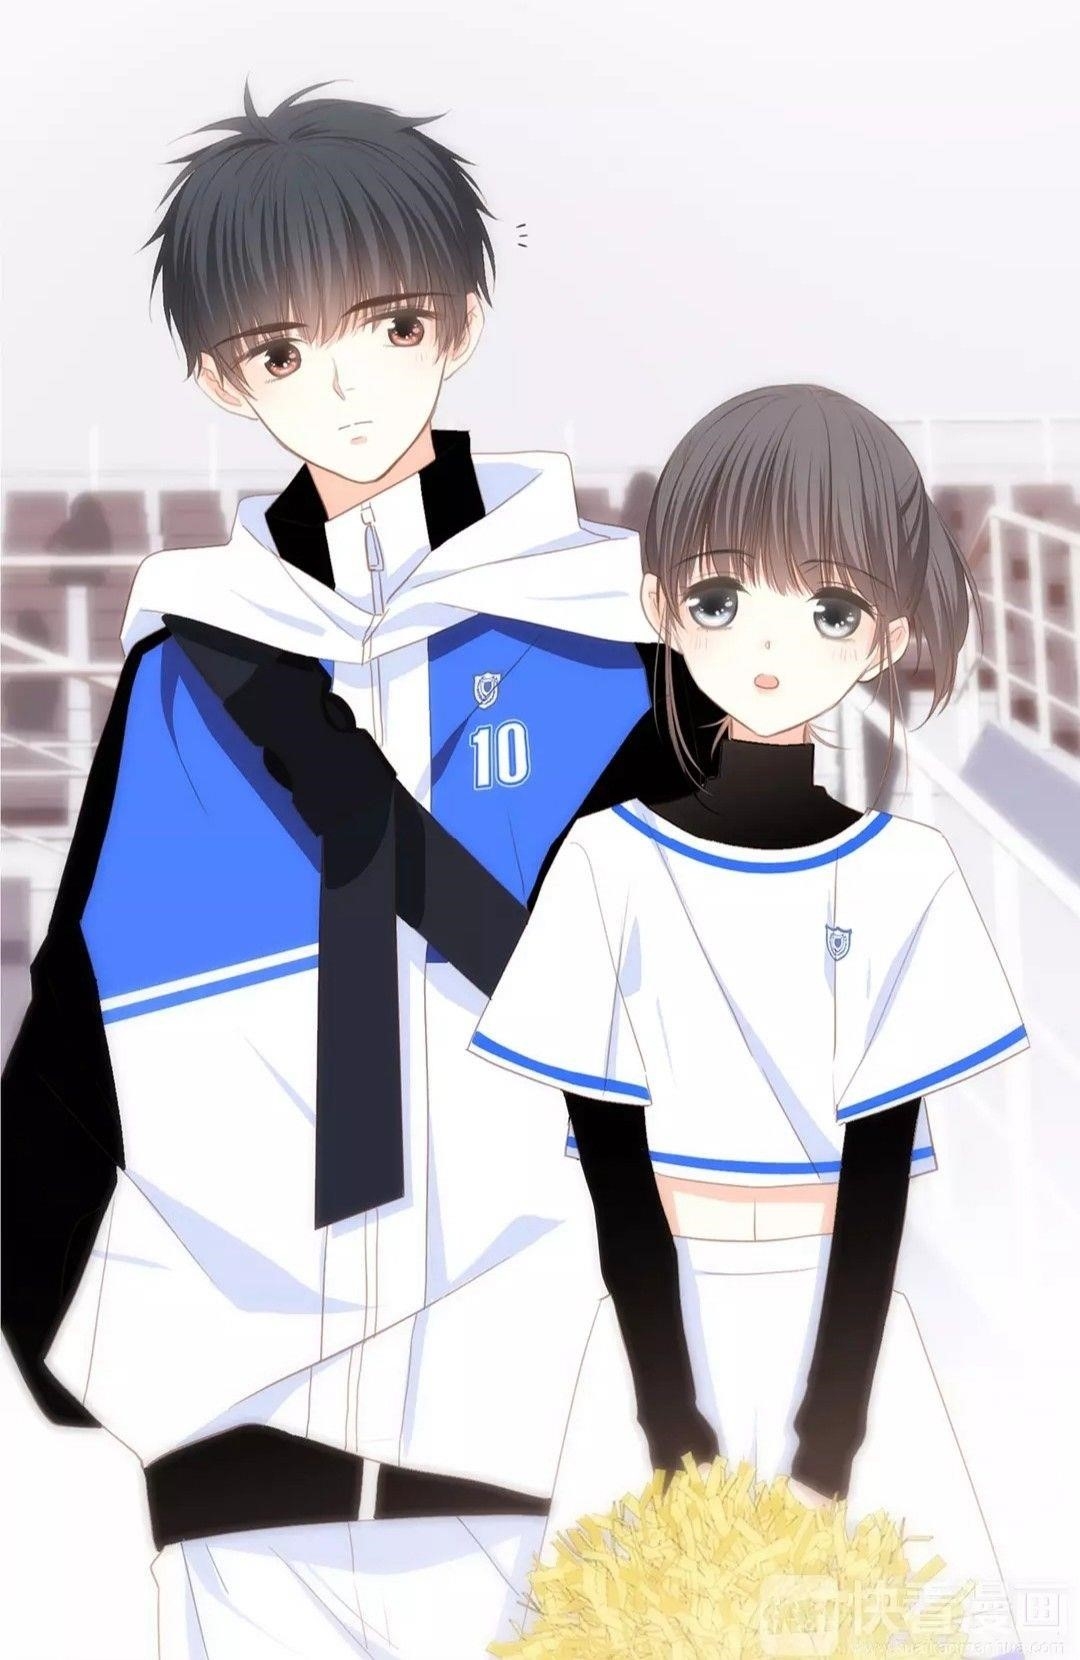 Ảnh cặp đôi anime cute là những hình ảnh vẽ hoặc thiết kế của các nhân vật anime, thường mang tính đáng yêu và dễ thương, thể hiện tình yêu và tình cảm giữa hai nhân vật trong truyện tranh hoặc phim hoạt hình Nhật Bản.